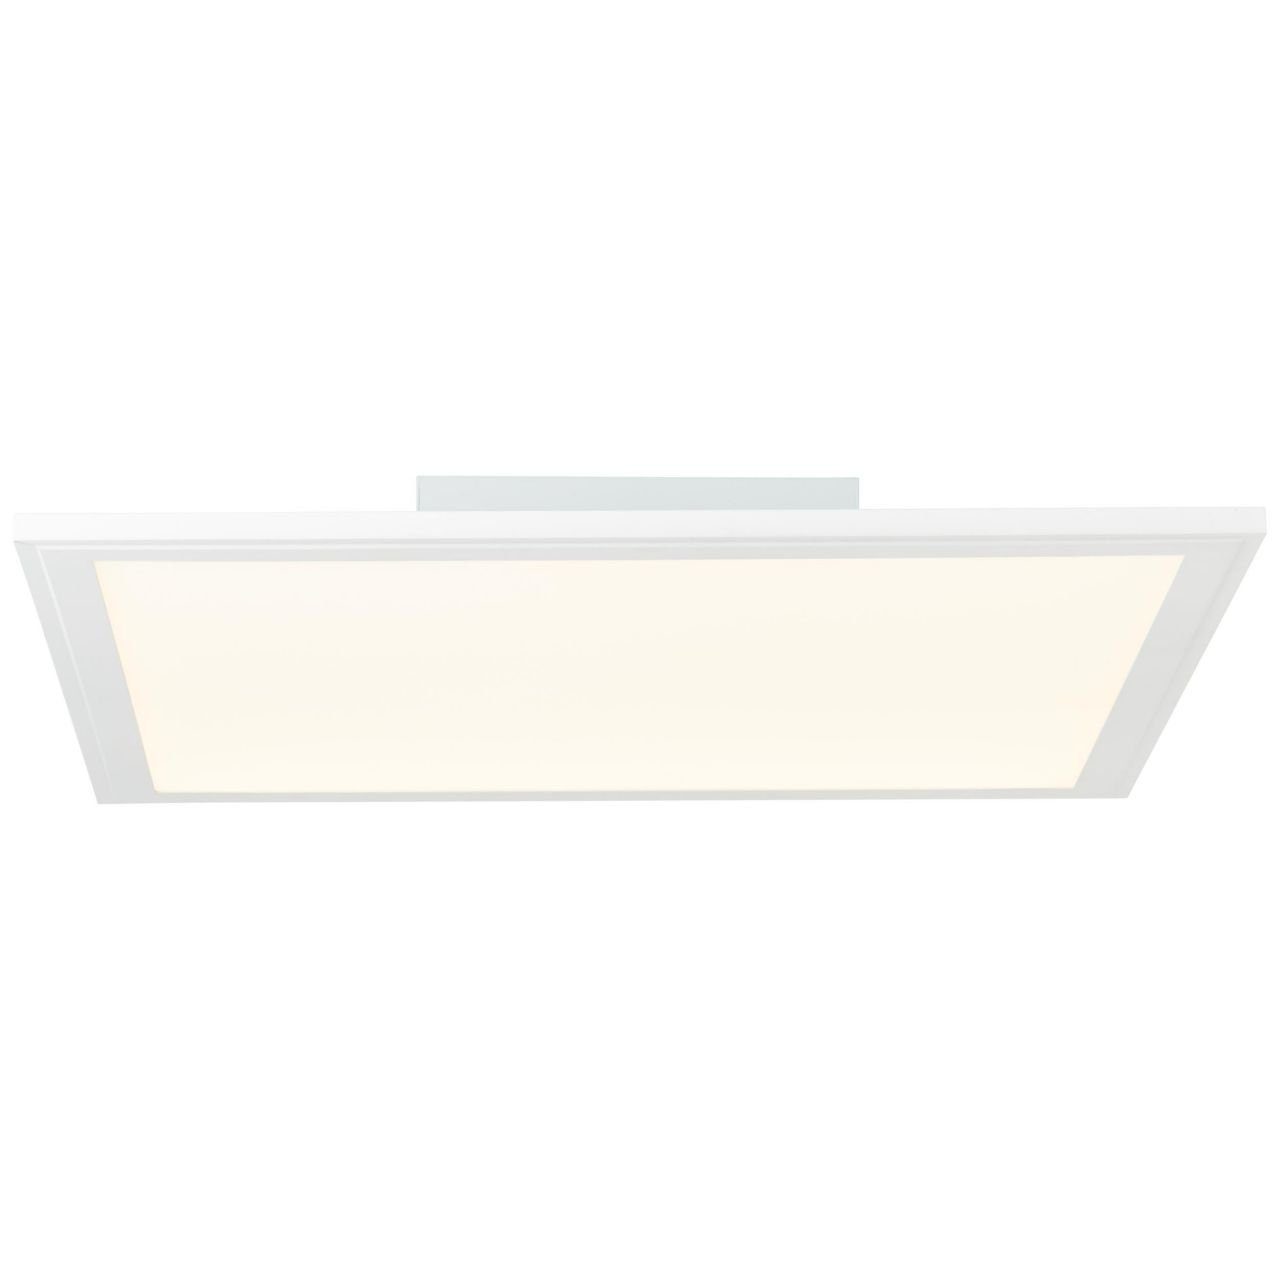 Brilliant Deckenleuchte LED weiß 1x Deckenaufbau-Paneel Abie, LED integ Lampe Abie RGB 2700-6200K, 24W 40x40cm